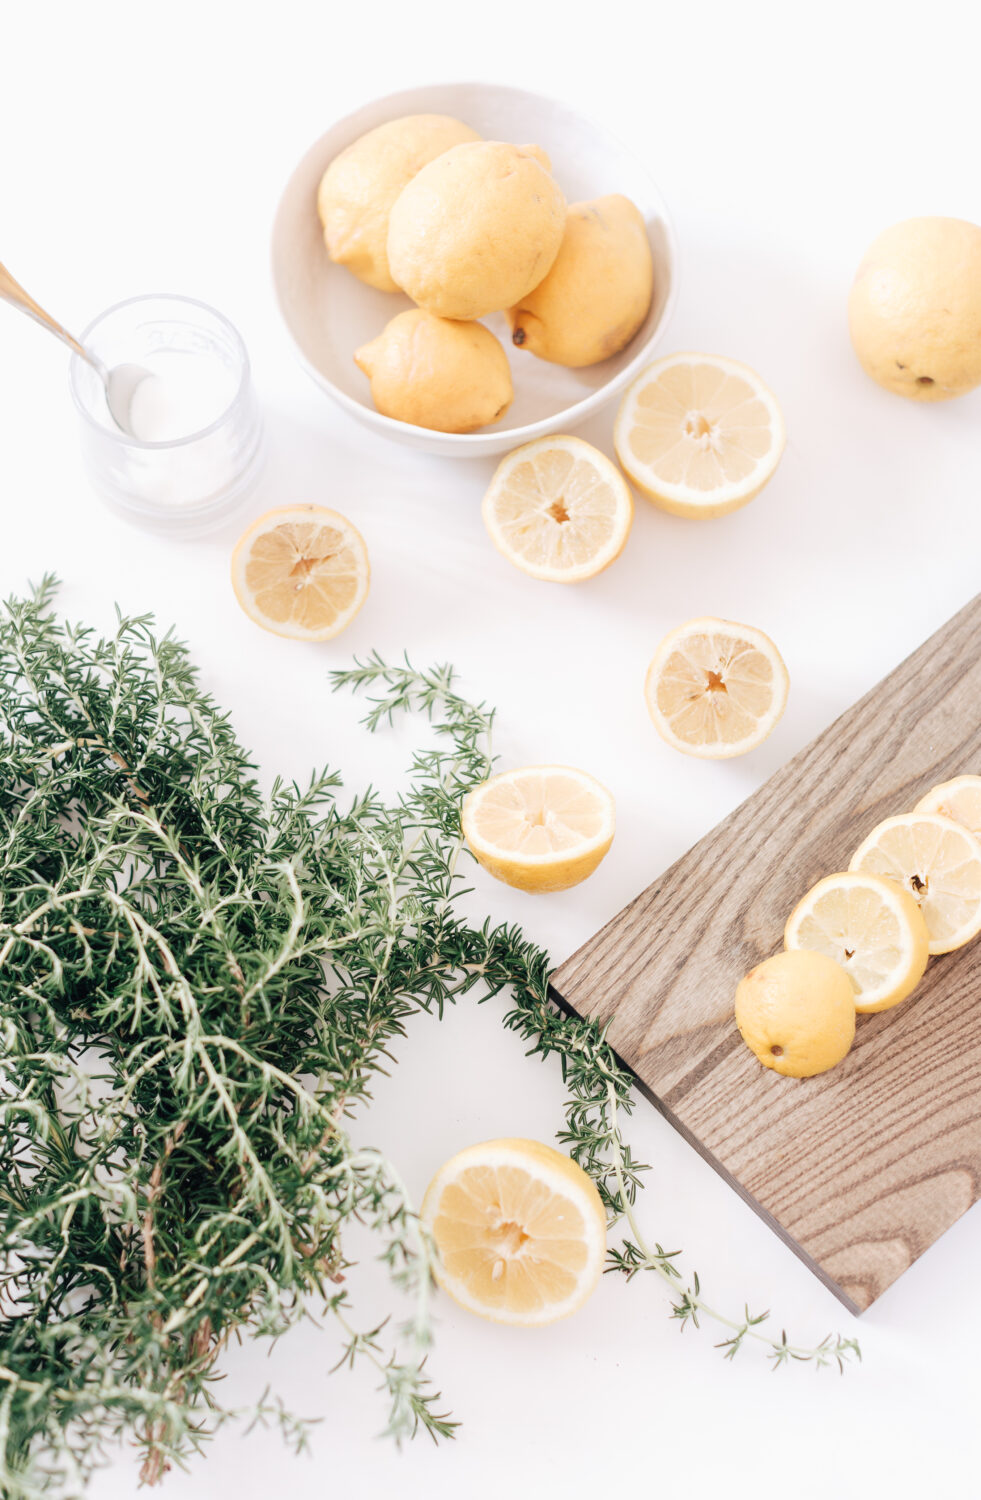 How to Make Rosemary Lemonade